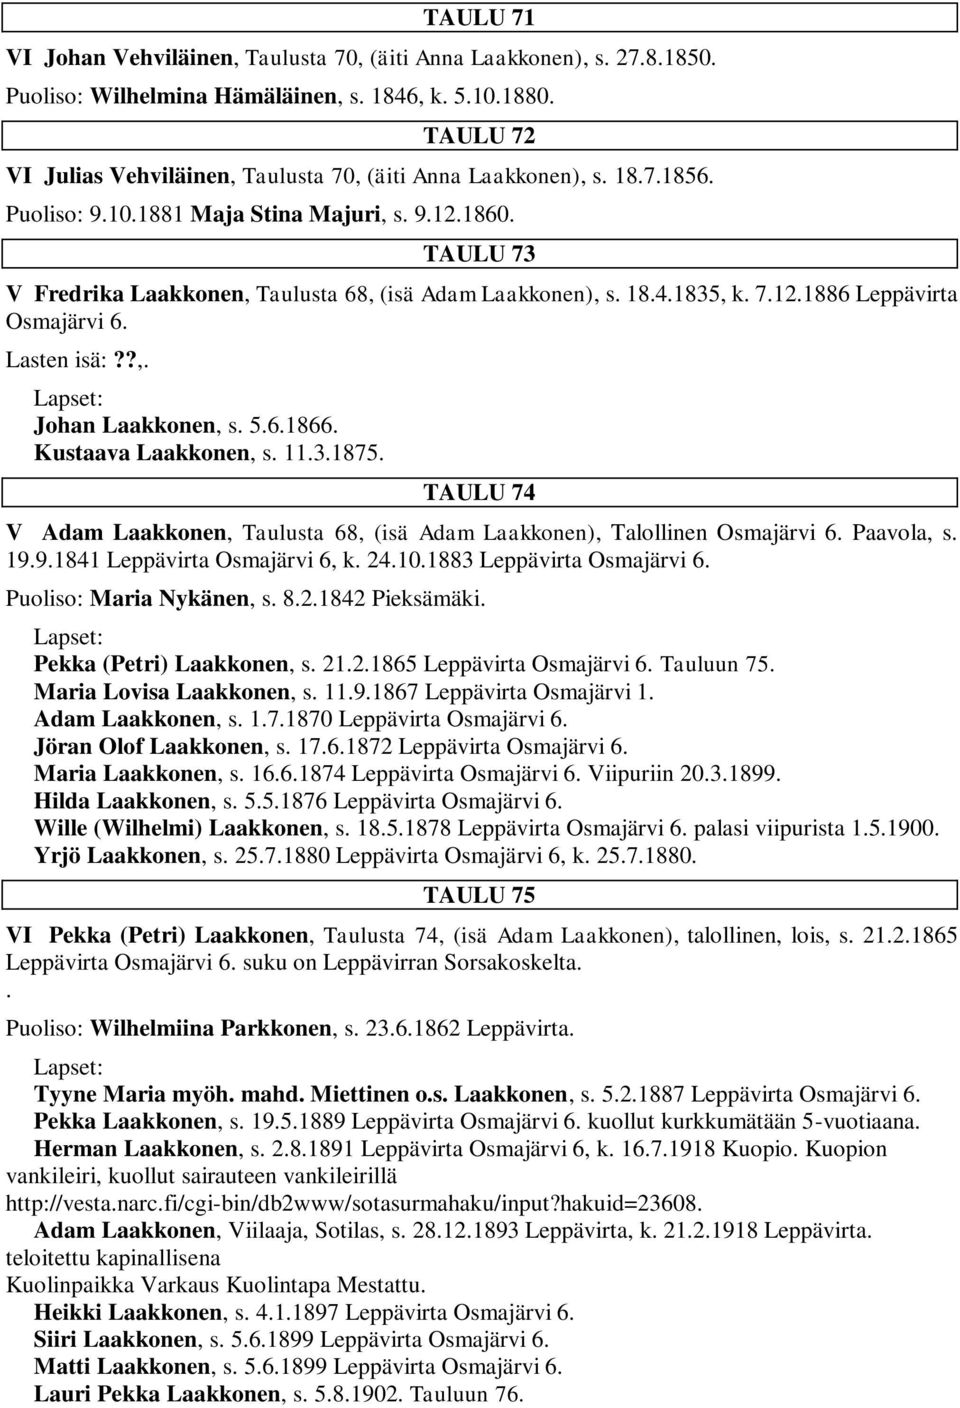 TAULU 73 V Fredrika Laakkonen, Taulusta 68, (isä Adam Laakkonen), s. 18.4.1835, k. 7.12.1886 Leppävirta Osmajärvi 6. Lasten isä:??,. Johan Laakkonen, s. 5.6.1866. Kustaava Laakkonen, s. 11.3.1875.